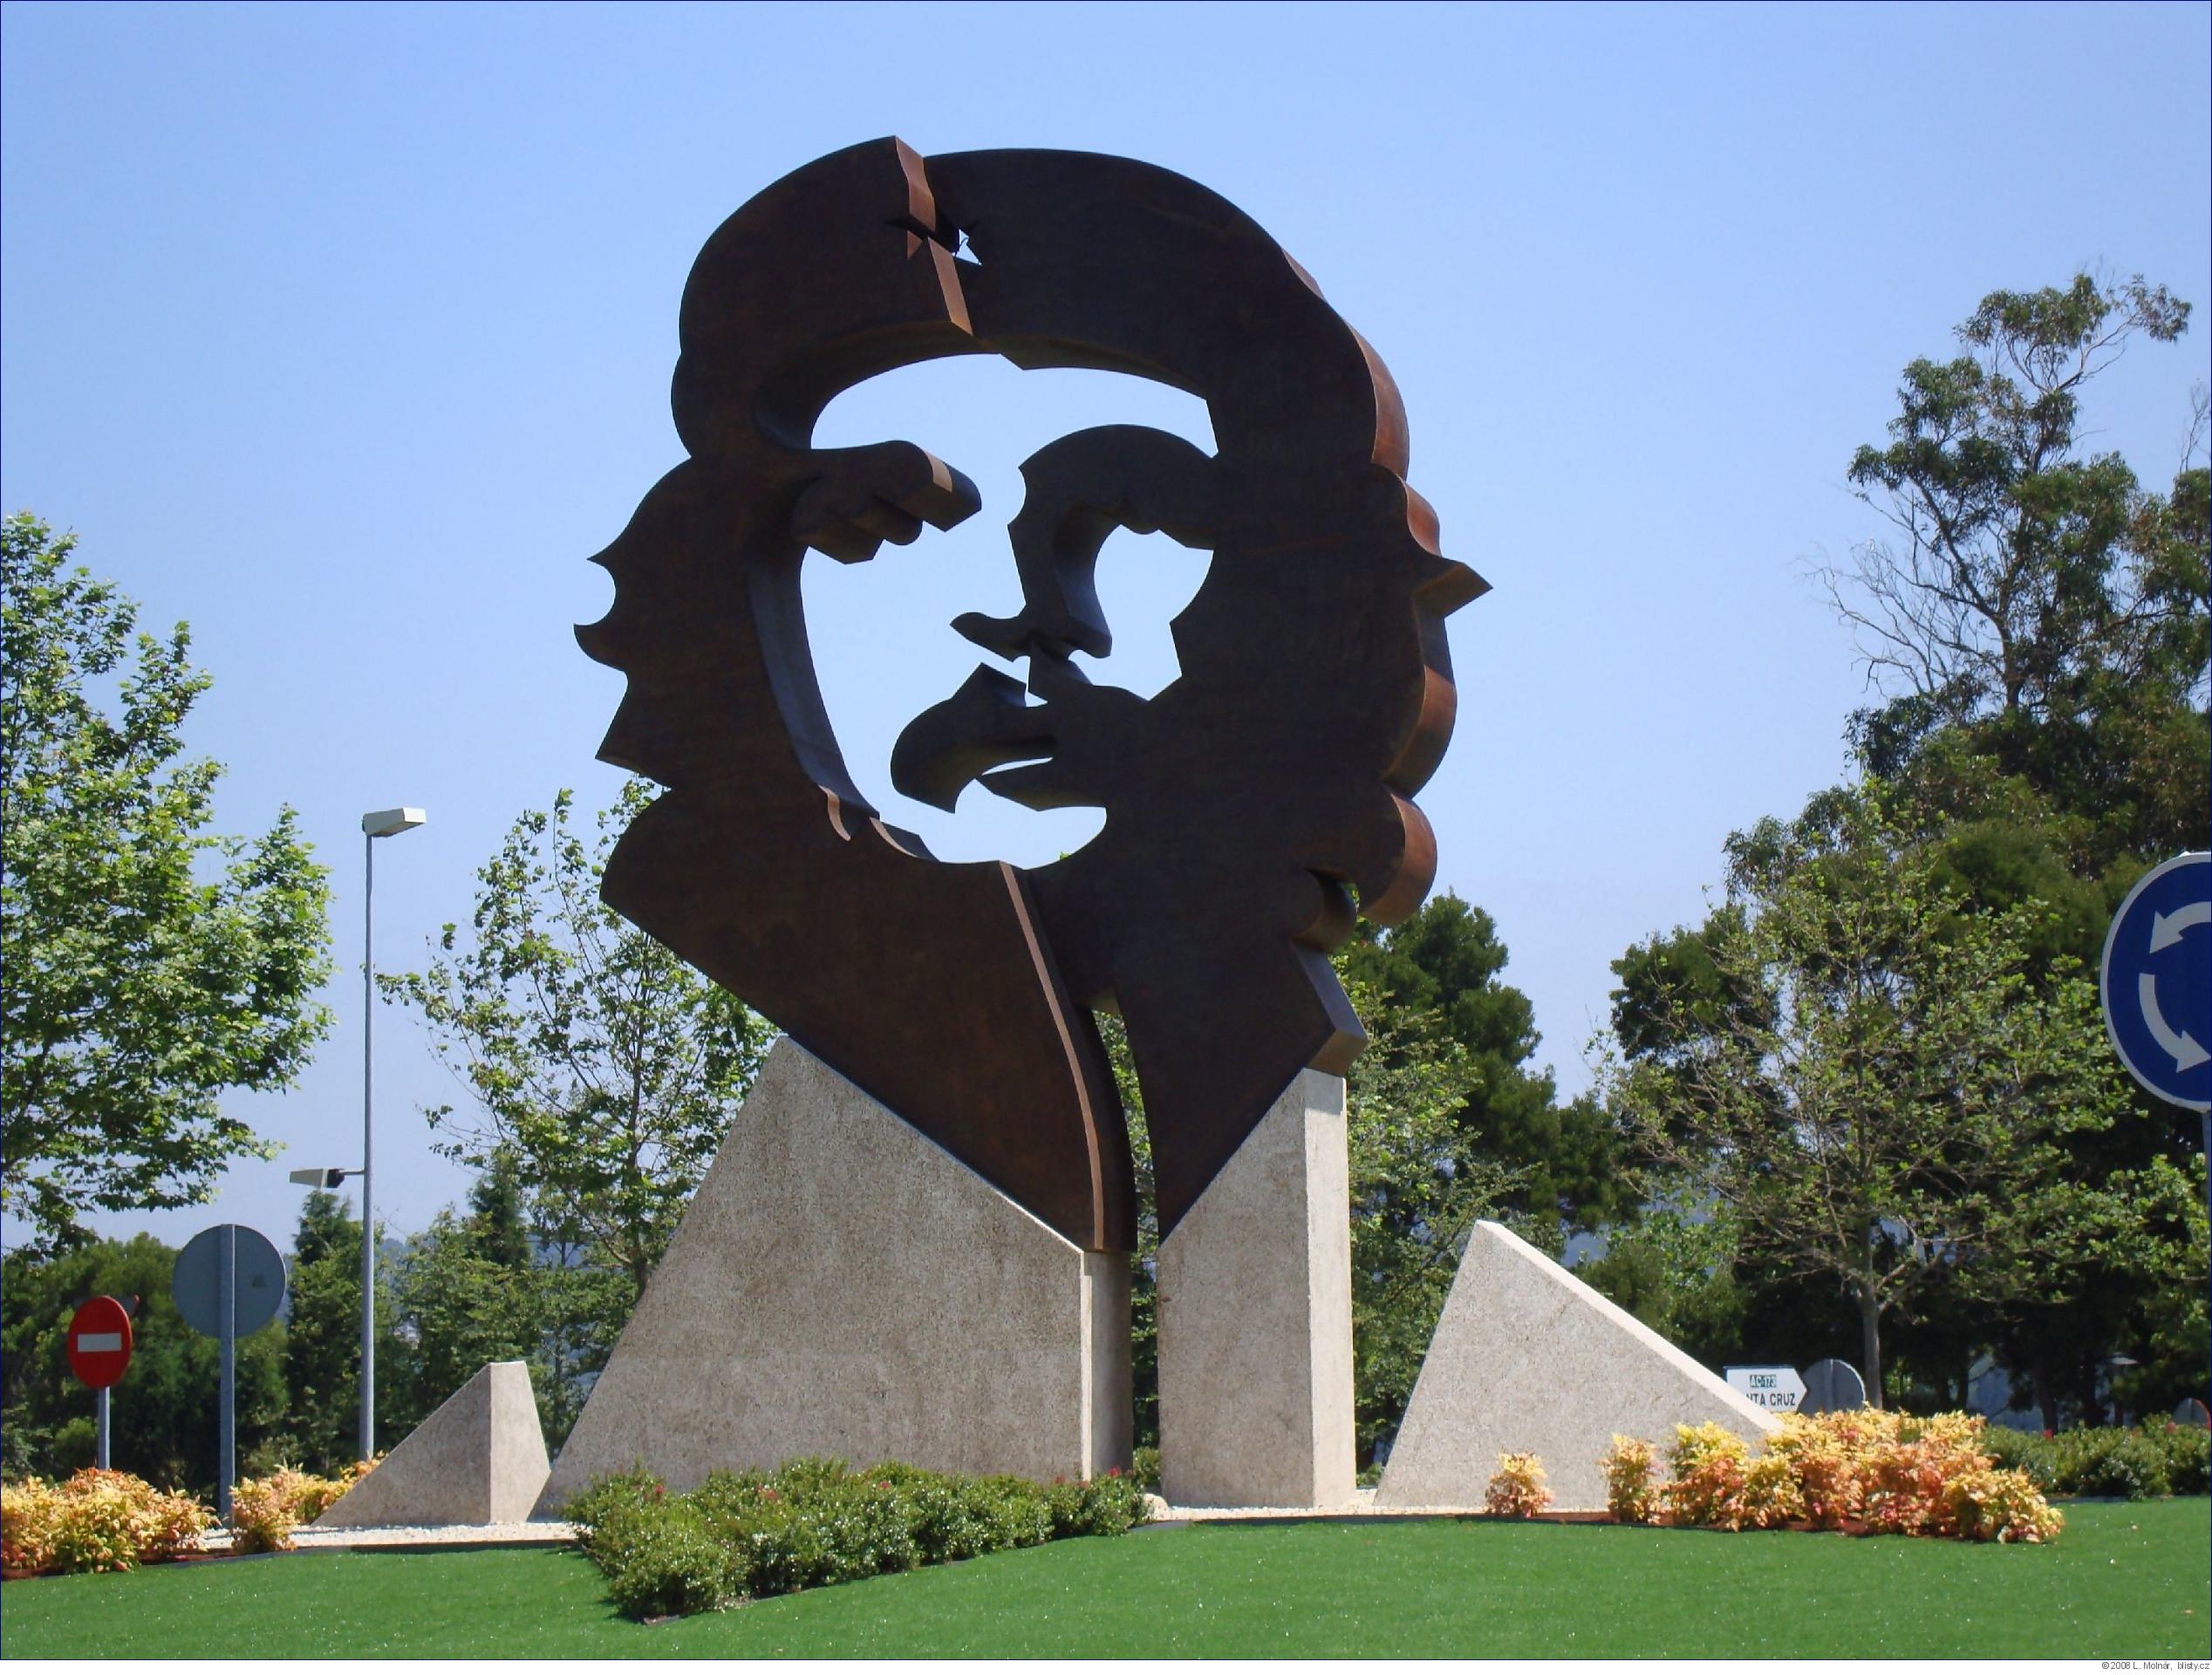 památník věnovaný památce Ernesta Che Guevary  na předměstí La Coruňi